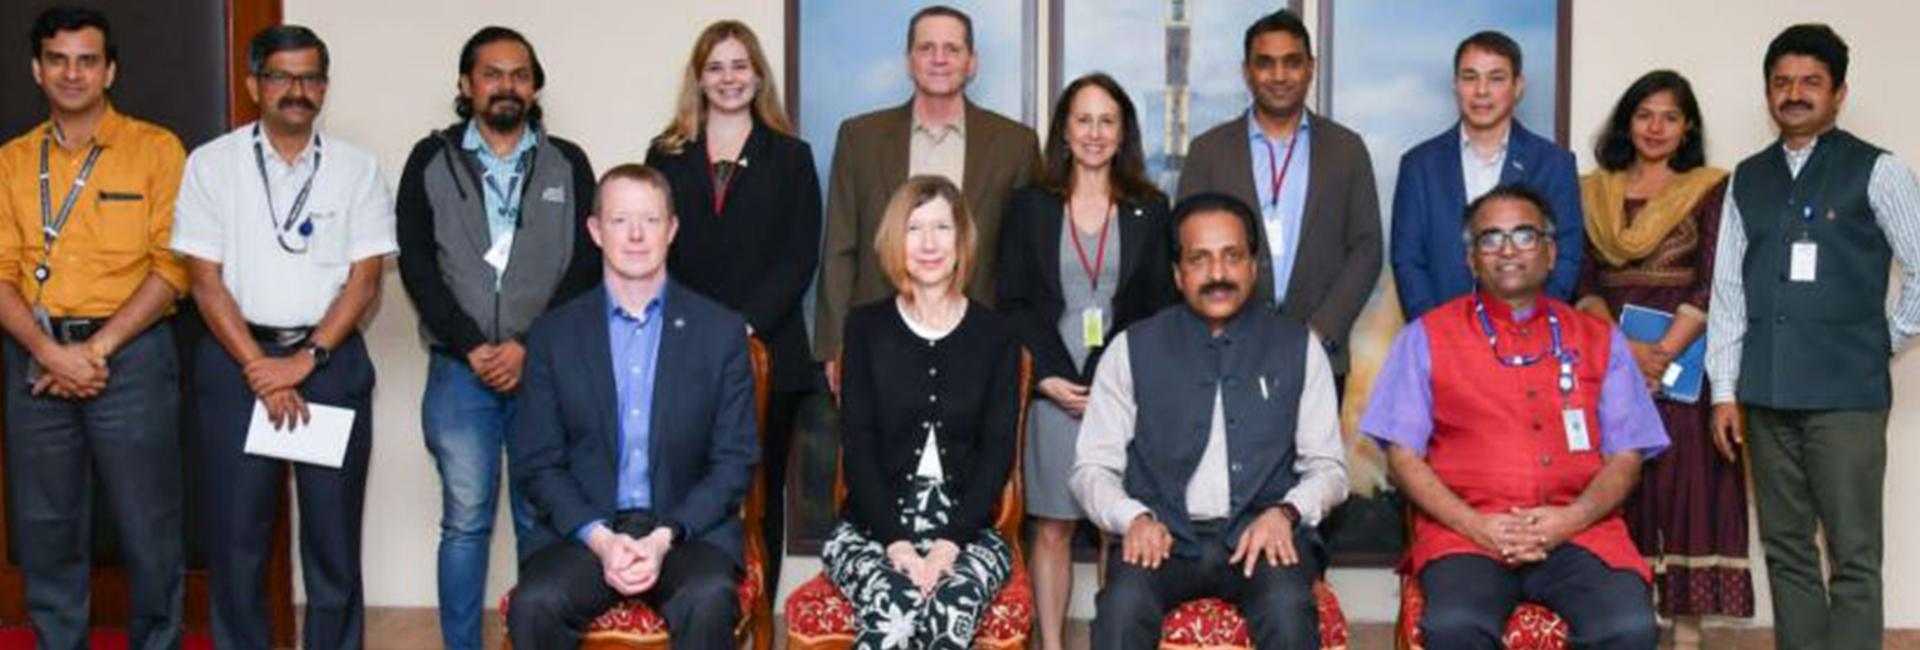 Kathryn Lueders, administradora associada da diretoria de missões de operações espaciais da NASA, estava em uma turnê pela Índia. Ela visitou a ISRO e conheceu o presidente S Somnath, o diretor de voo espacial humano, Dr. Umamaheswaran R, e outros membros da força de trabalho da ISRO.